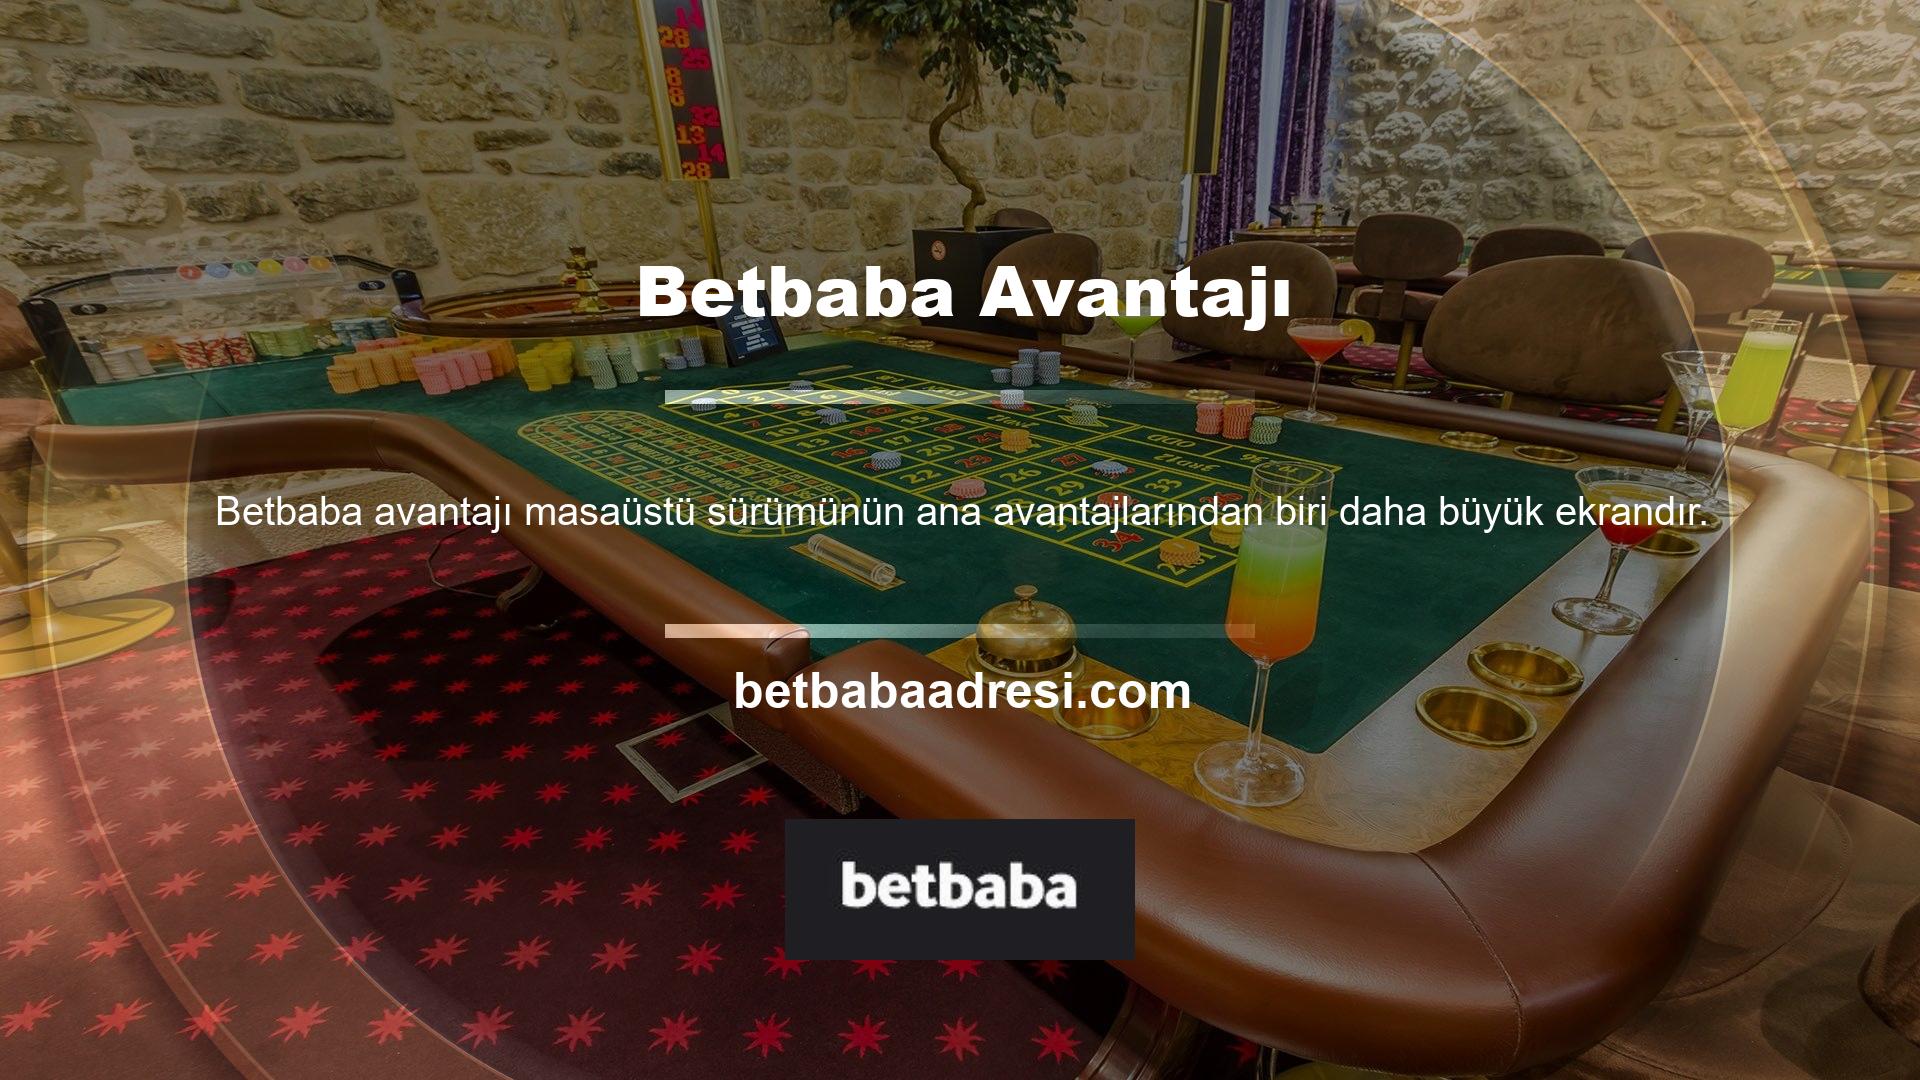 Kullanıcılar Betbaba Masaüstü Bağlantısı ile büyük ekranda oyunların keyfini çıkarabilirler